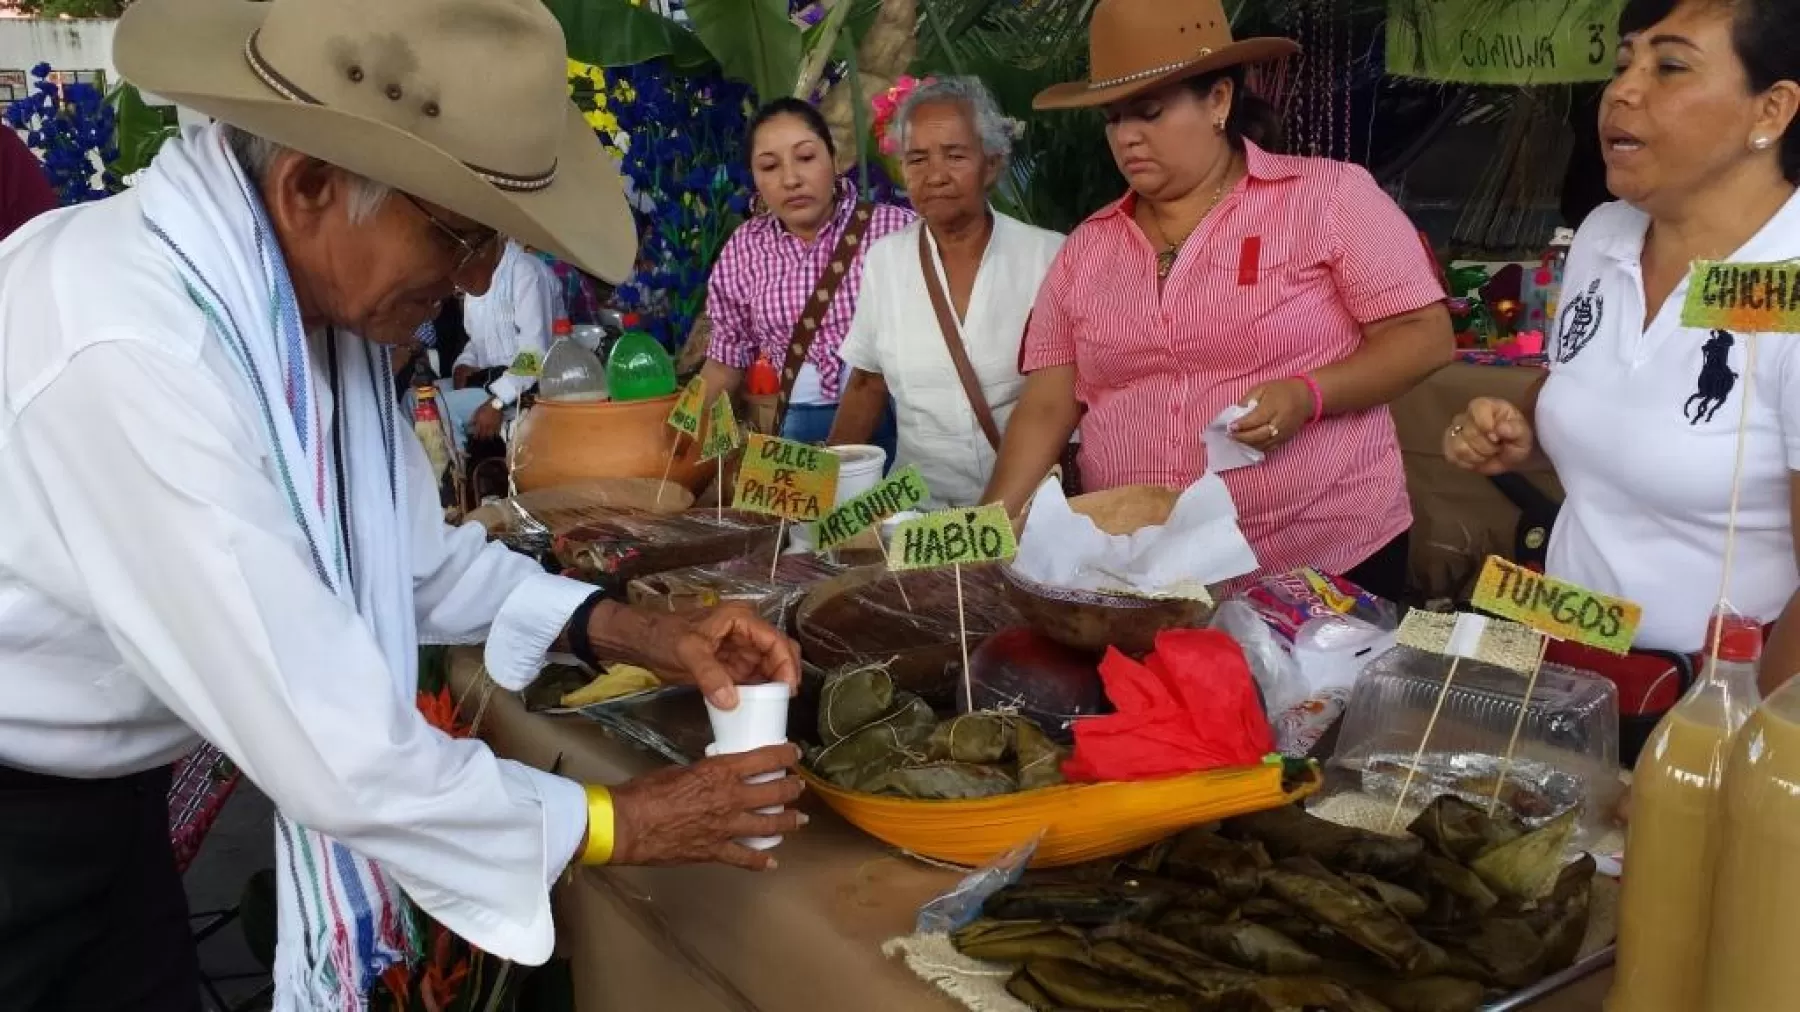  Primera Feria Empresarial “Madre Cabeza de Hogar”, que se realizara los días 27, 28 y 29 de Noviembre en el Parque La Herradura de Yopal.